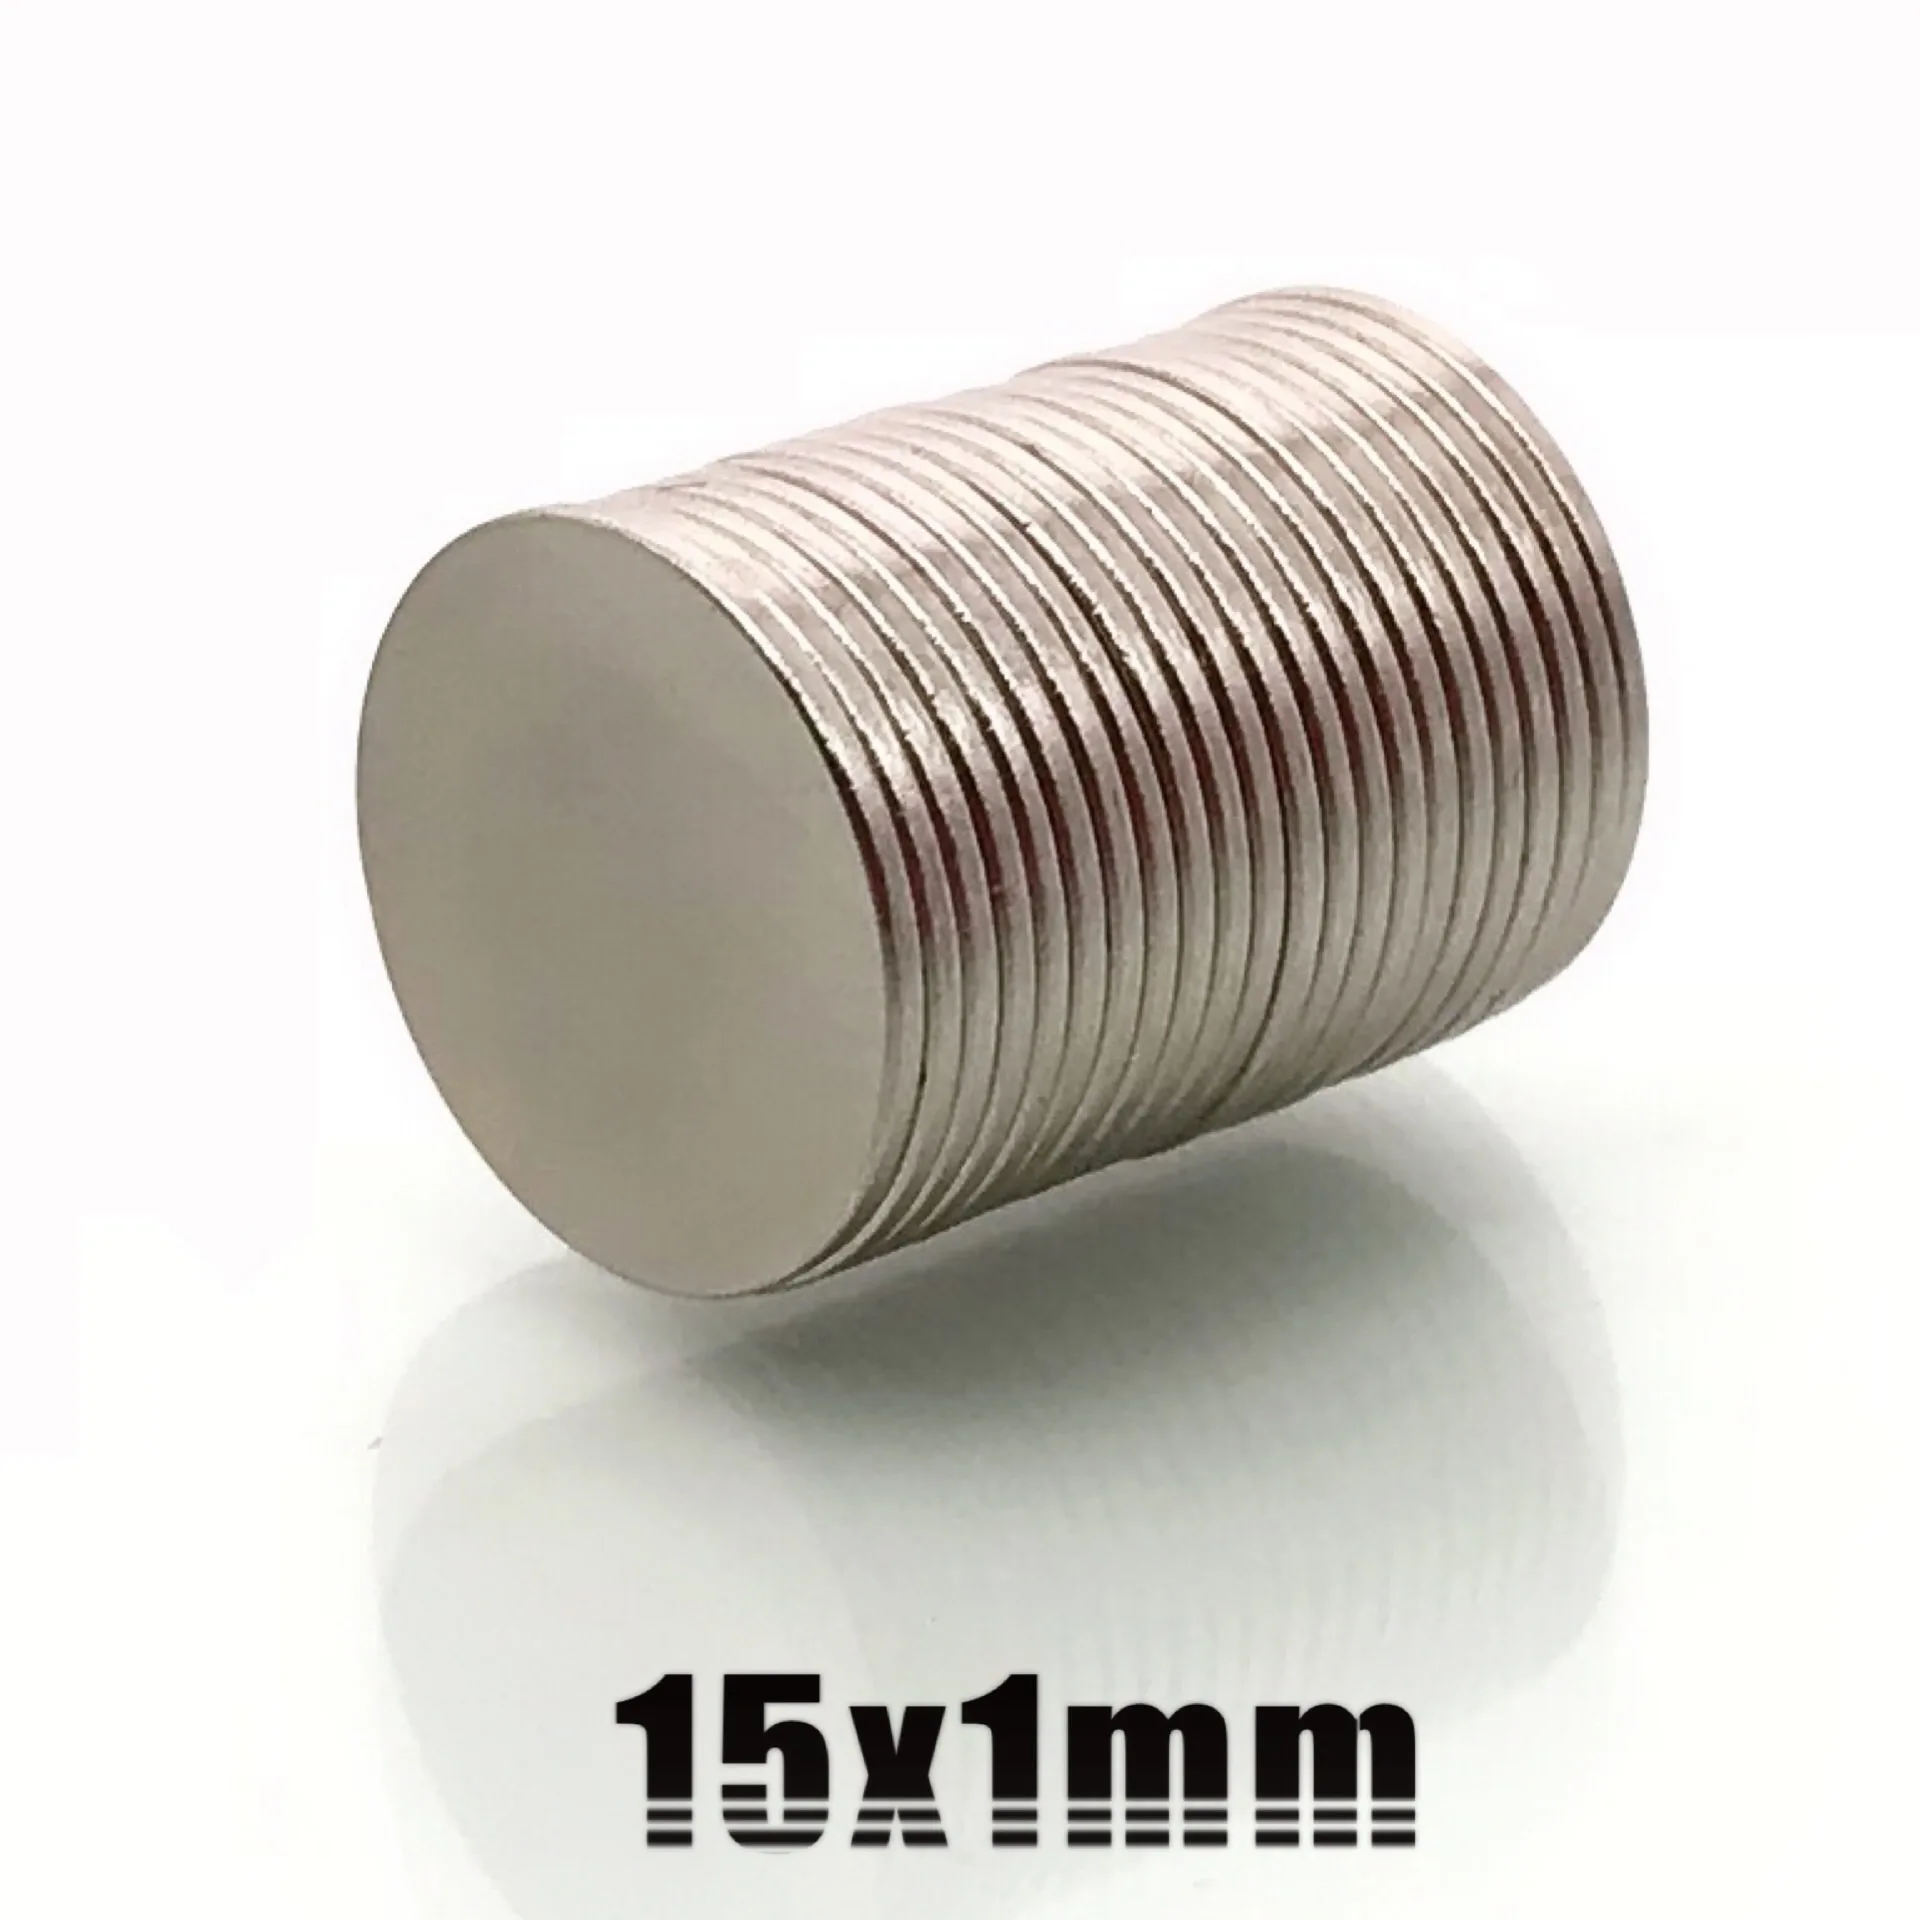 10 x 15 mm superstarke Rundzylinder Magnete seltenen Erden Neodym 5pcs N50 